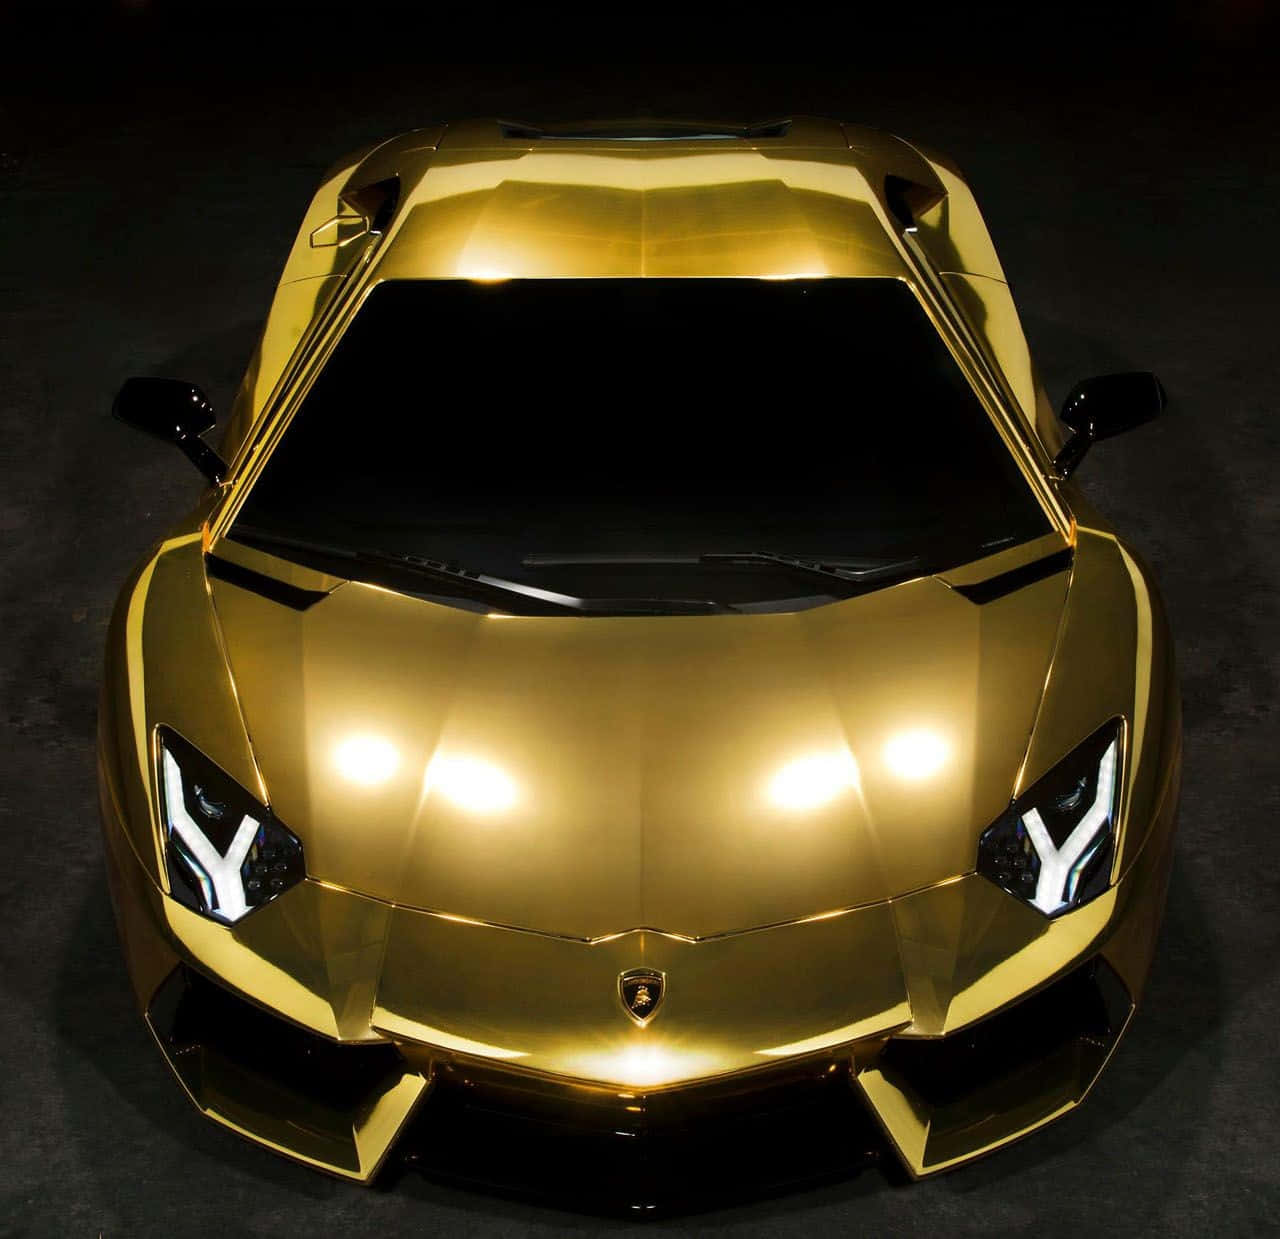 Sắm ngay chiếc xe Lamborghini màu vàng để trở thành tâm điểm của mọi ánh nhìn. Với thiết kế sang trọng, động cơ mạnh mẽ, đây chắc chắn sẽ là niềm tự hào cho bất kỳ tín đồ xe hơi nào.